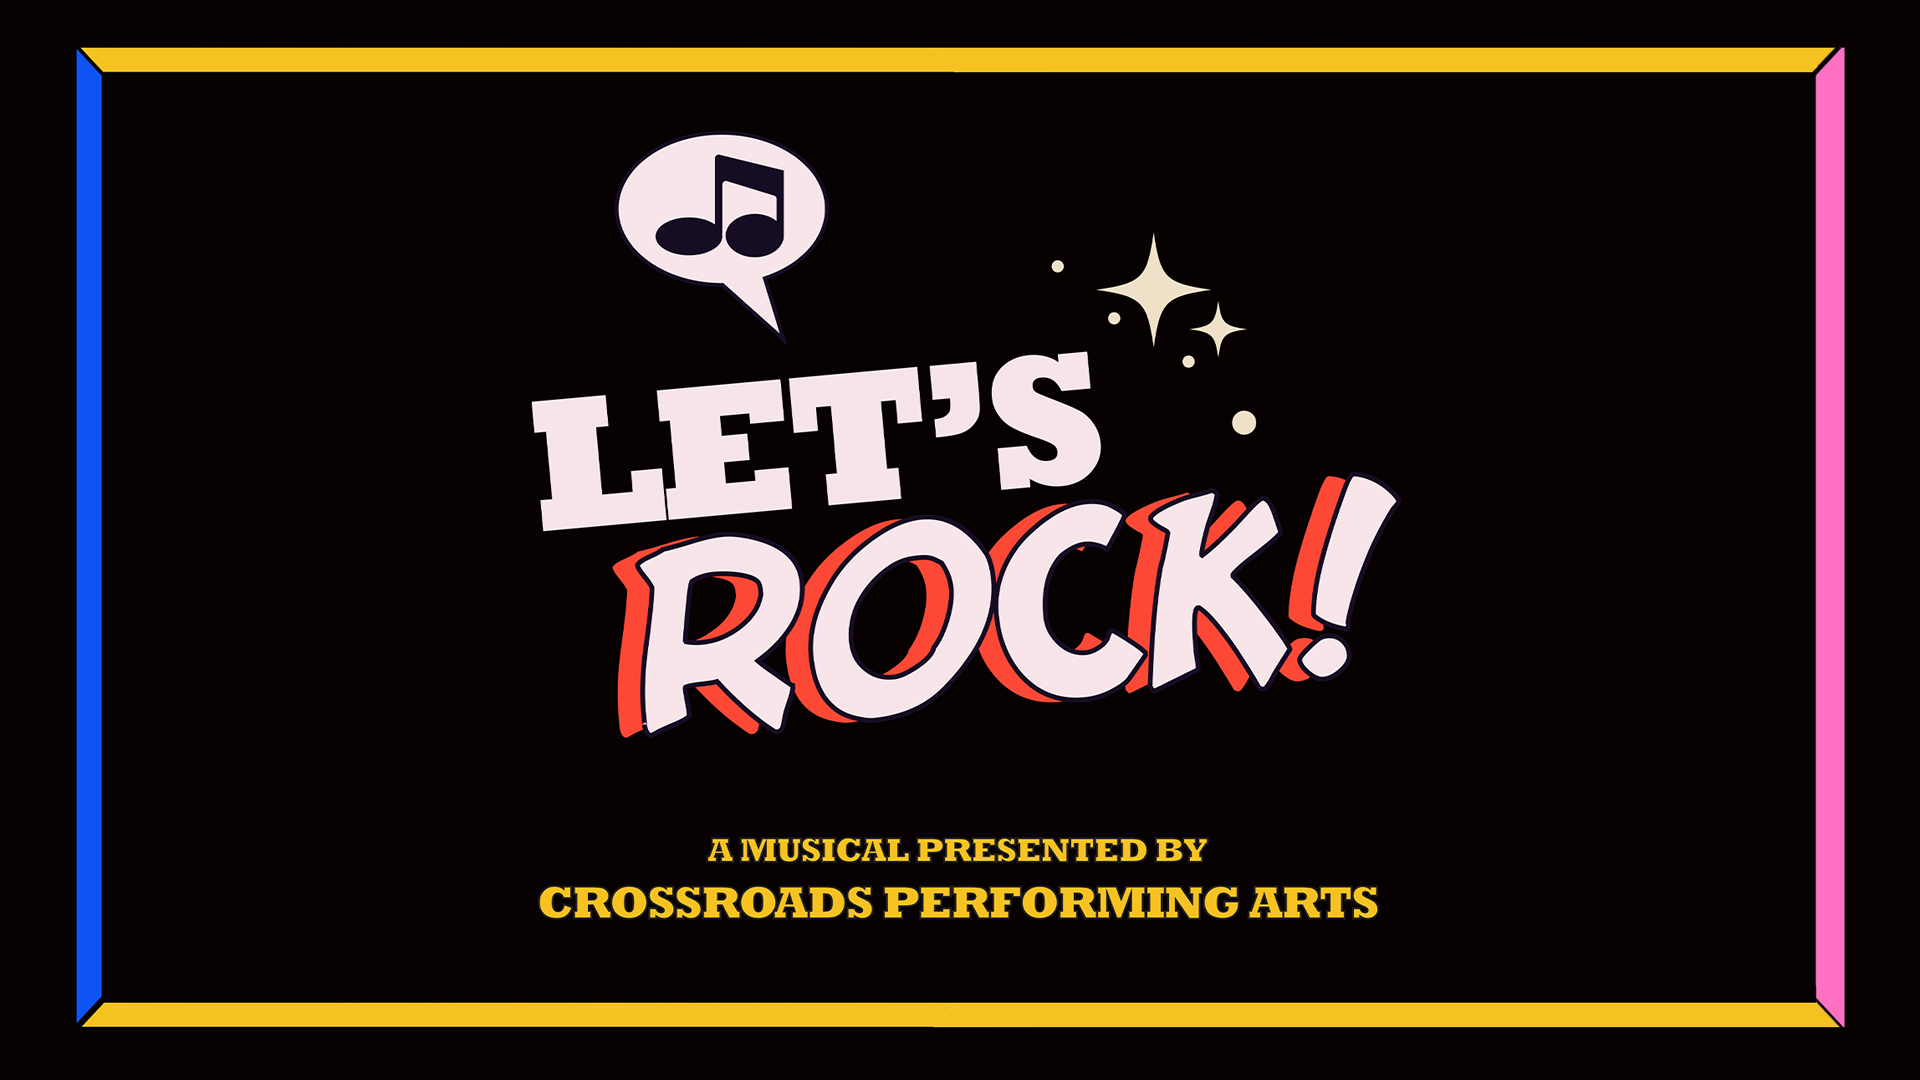 Crossroads Performing Arts presents “Let’s Rock!”